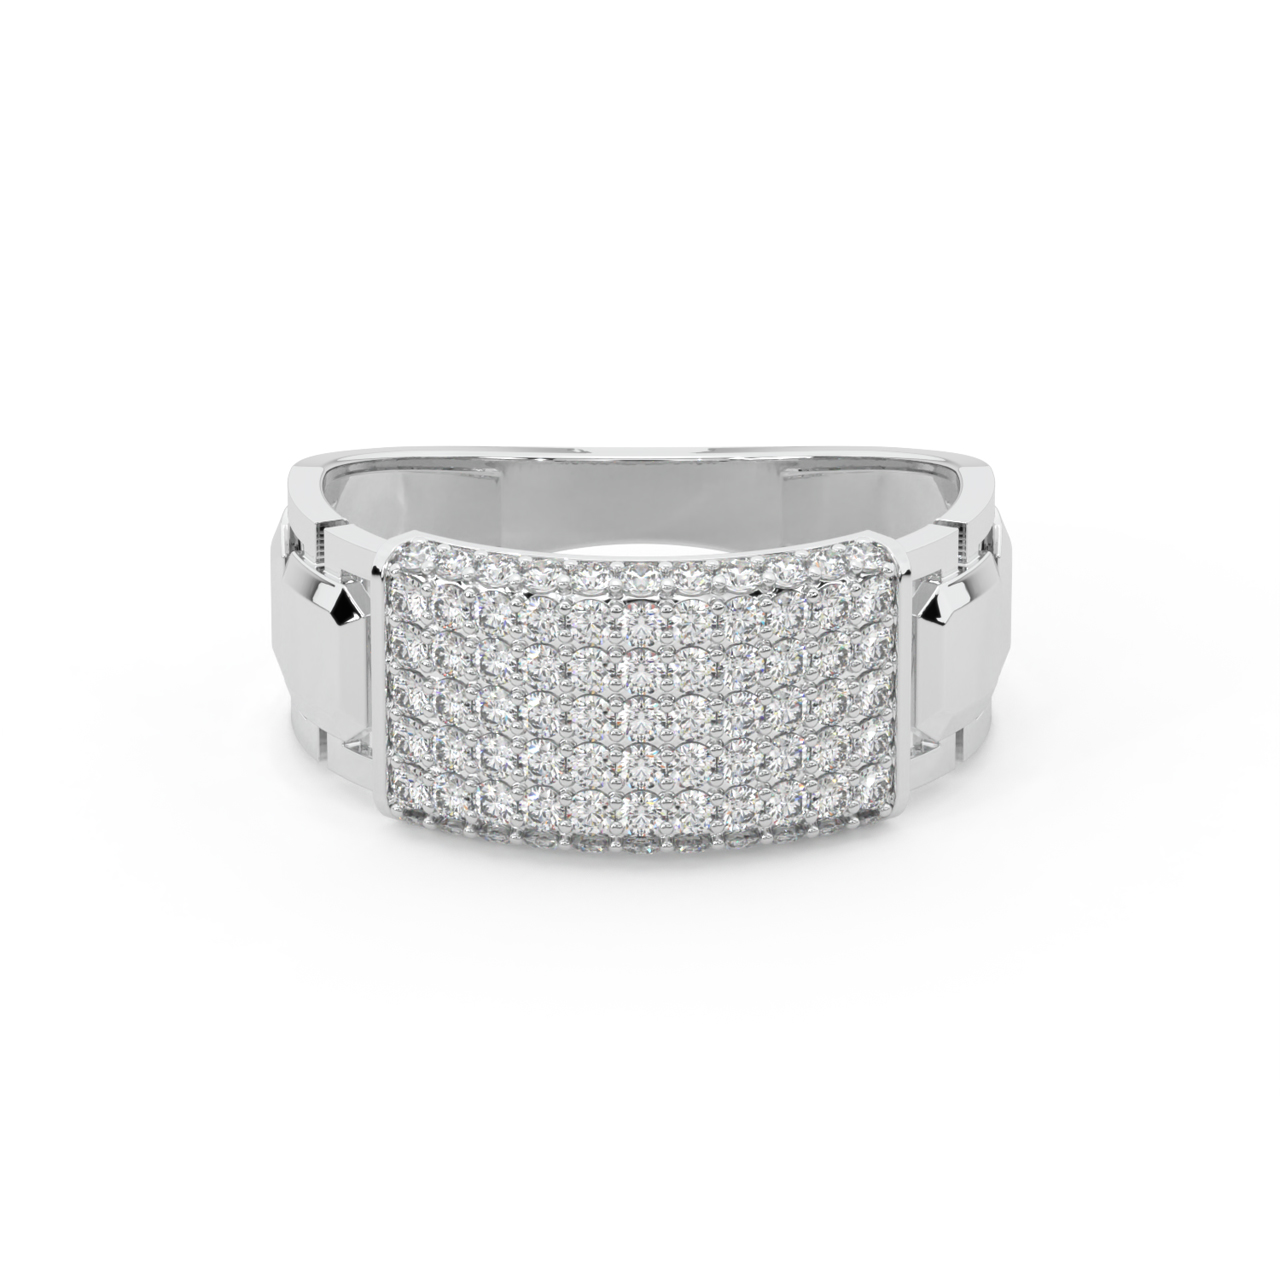 Elegant Diamond Ring For Men